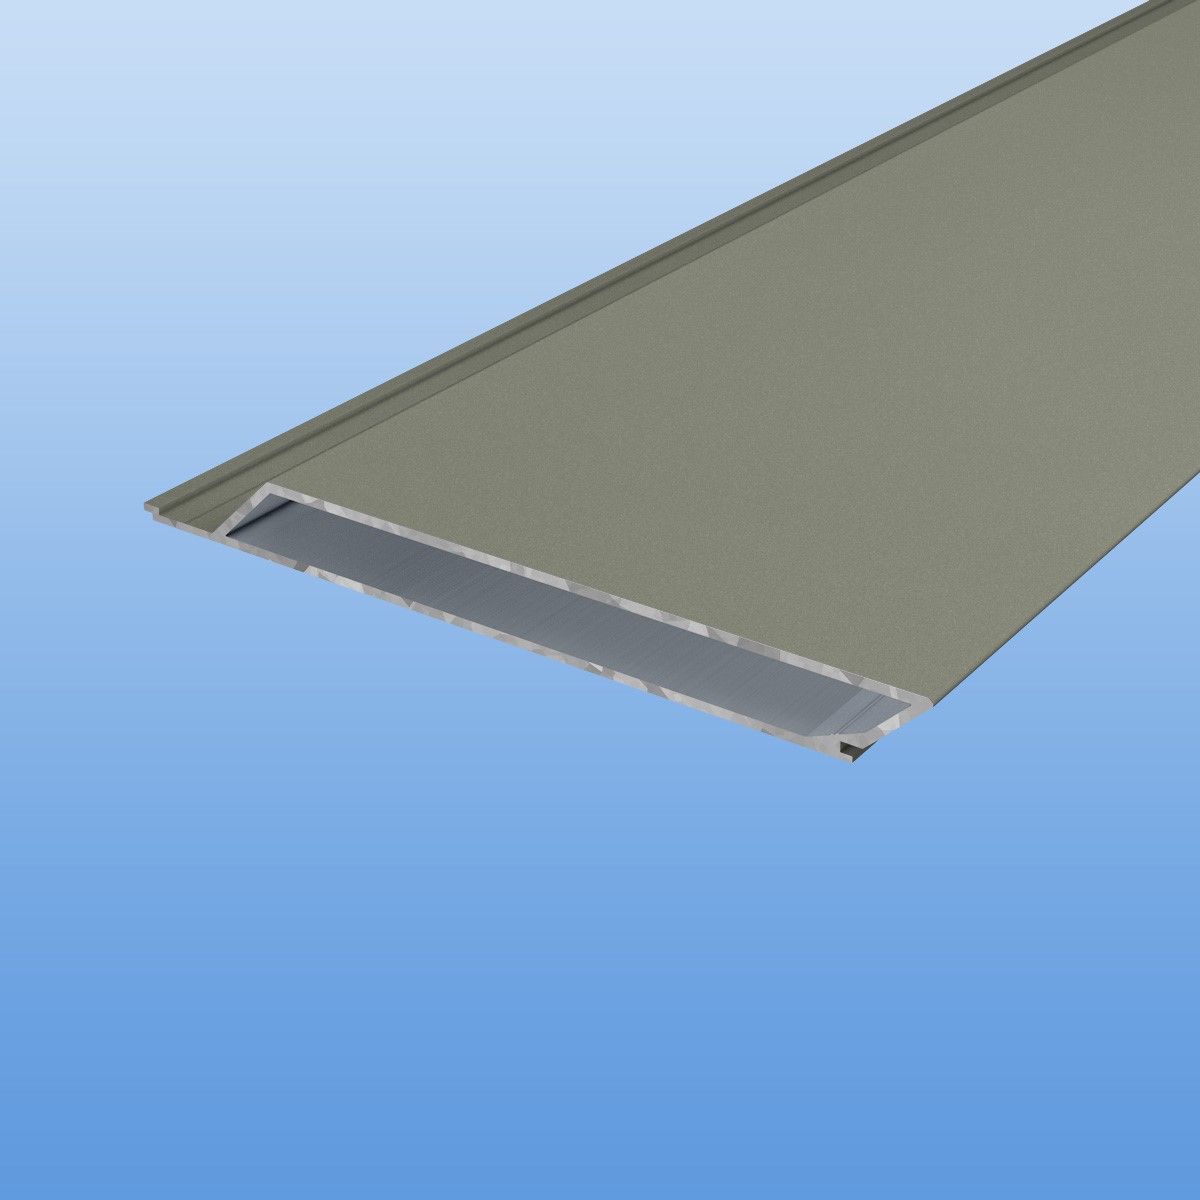 Rhombusprofil aus Aluminium 16mm mit Montagesteg in Grau (RAL 7030) - Sichtfläche 134mm